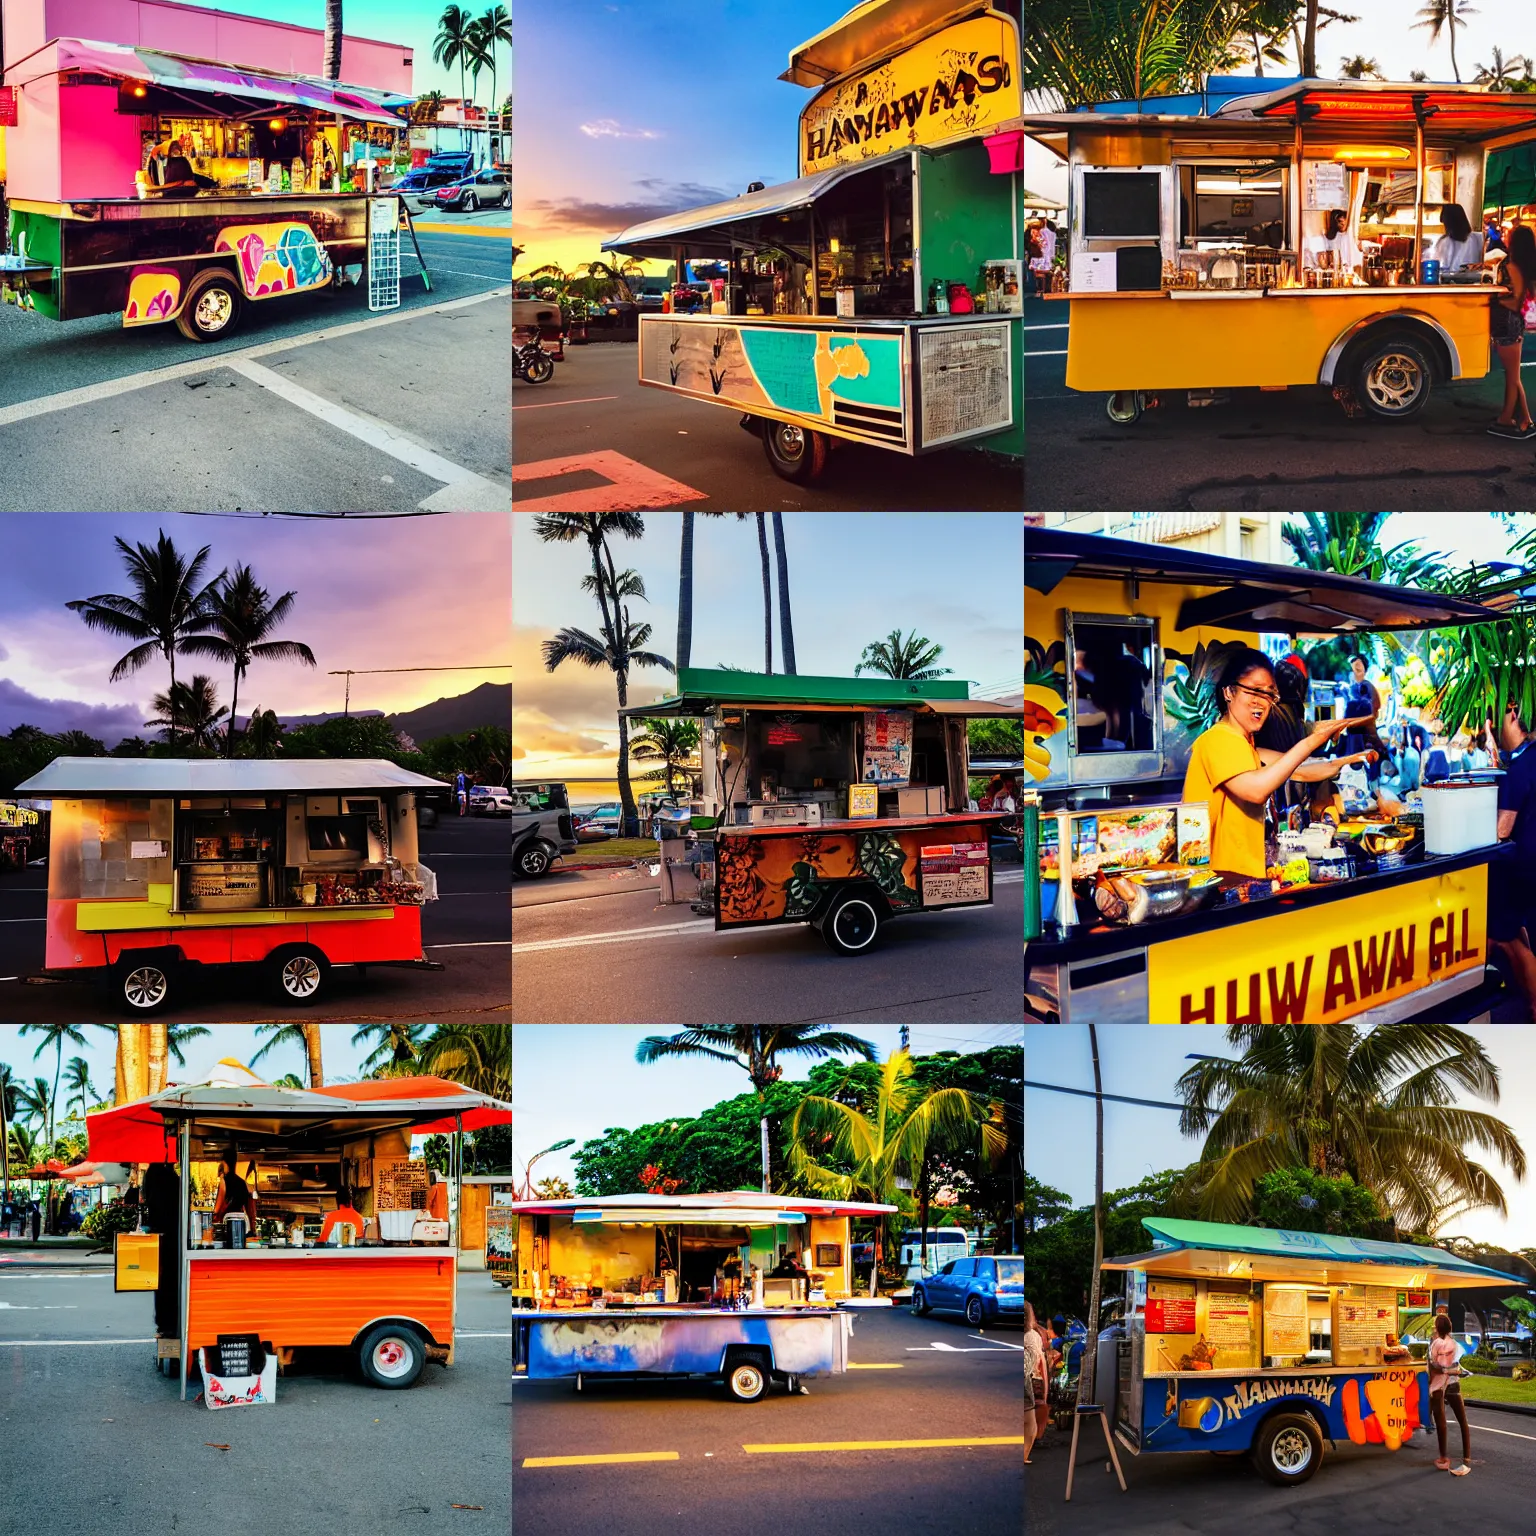 Prompt: Hawaiian street food cart, golden hour